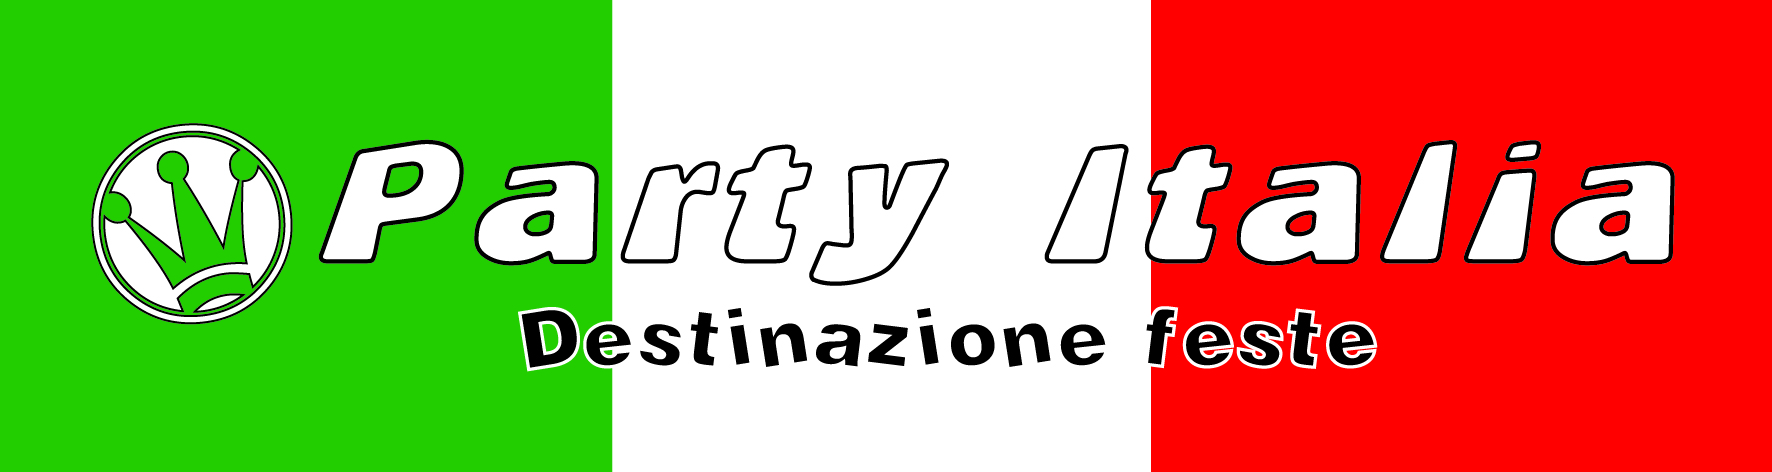 PARTY ITALIA - DESTINAZIONE FESTE 